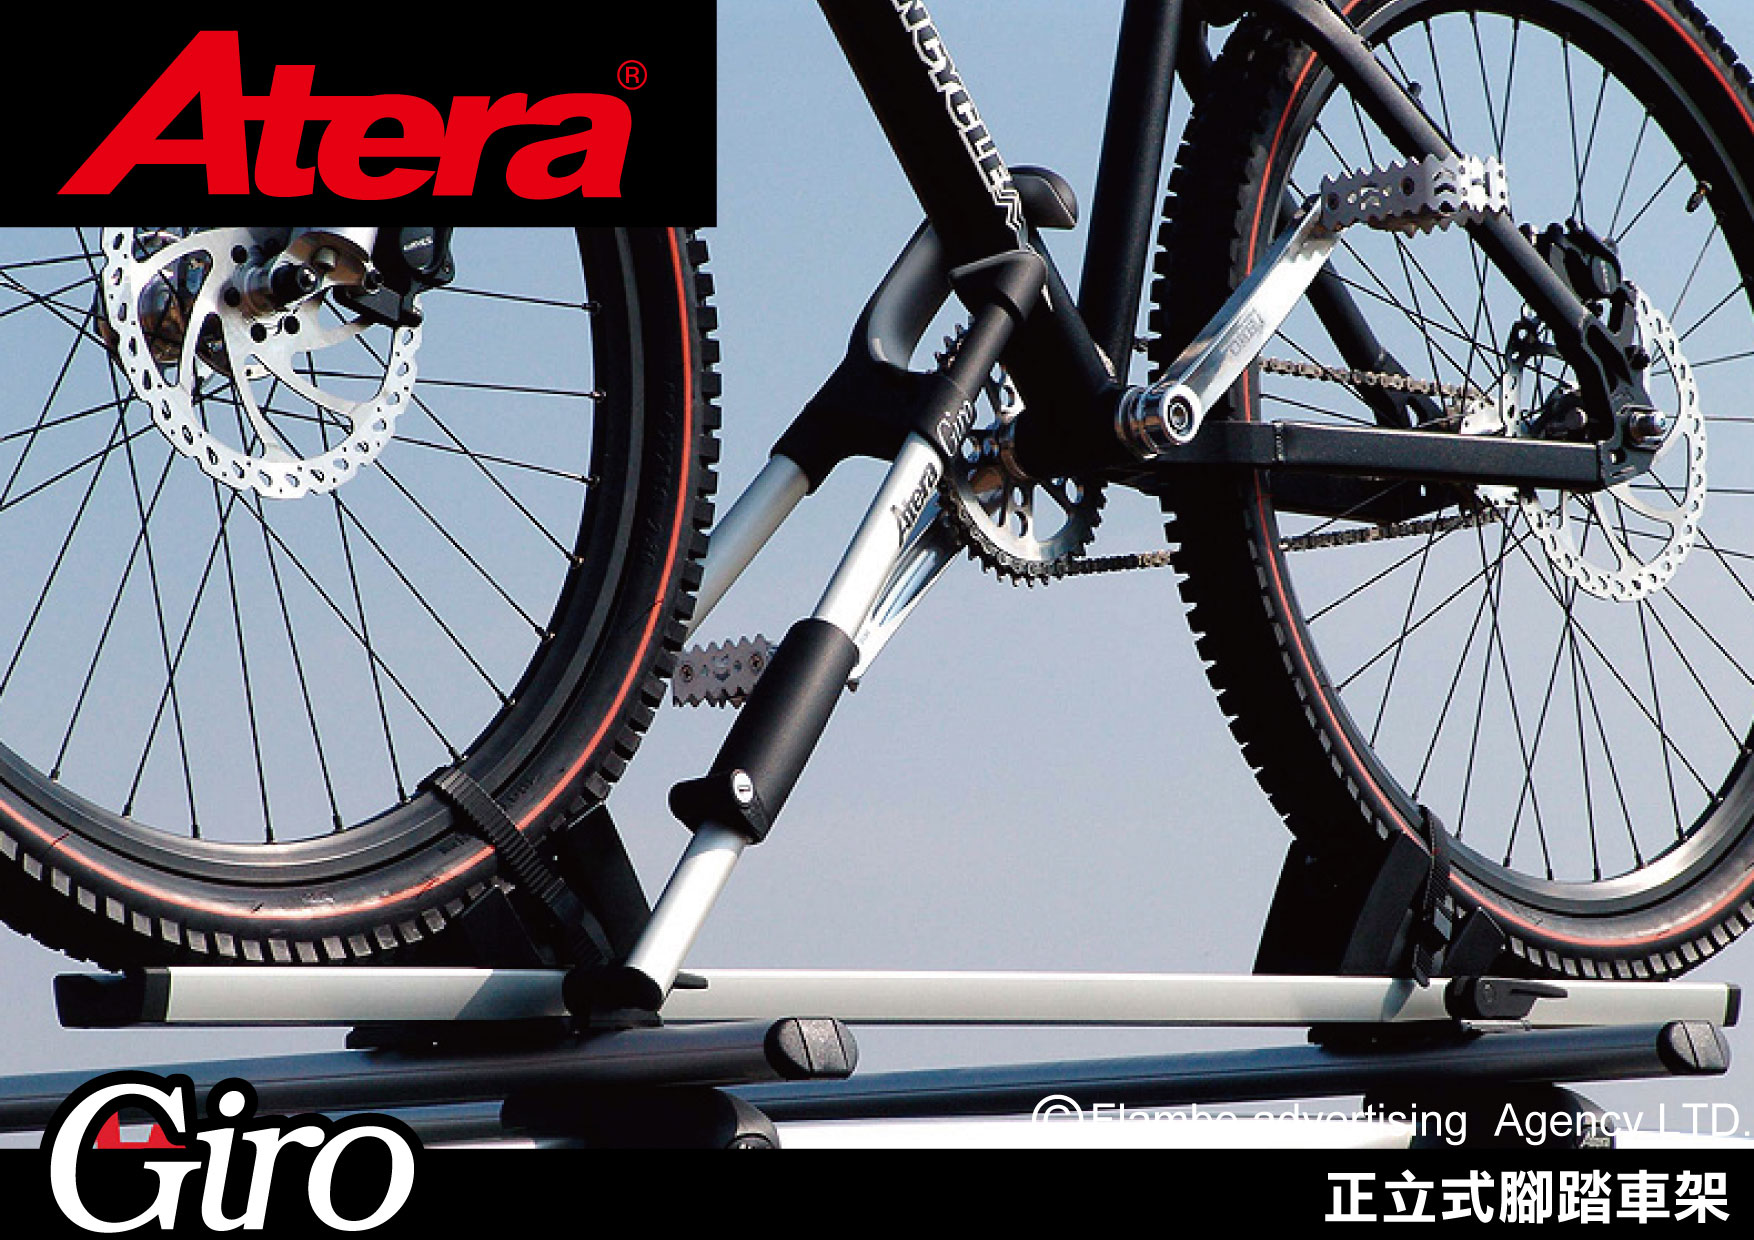 Atera Giro 正立式腳踏車架